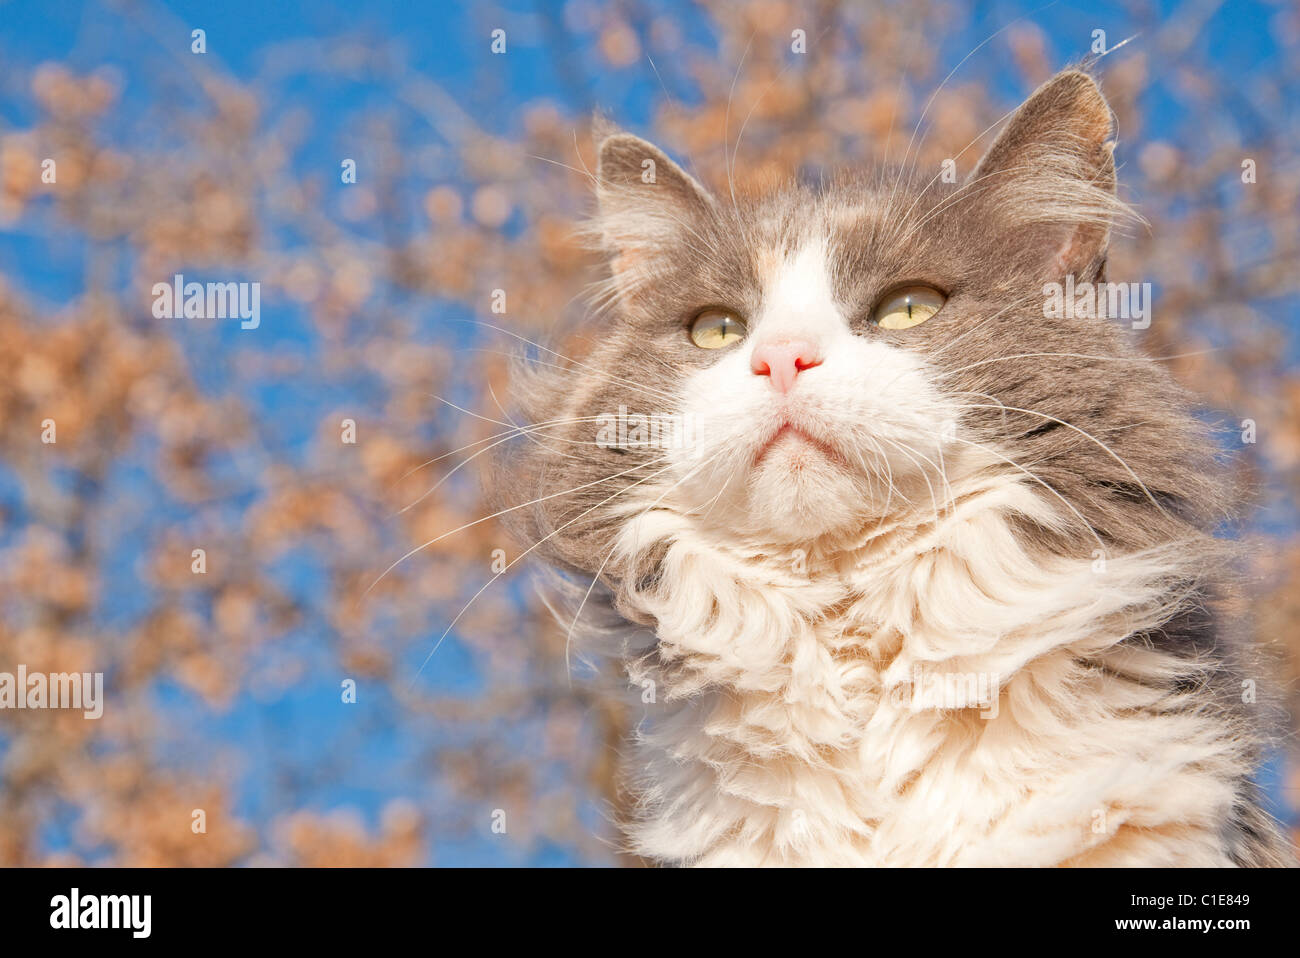 Bellissimi capelli lunghi diluito gatta calico contro il cielo blu e un albero secco con foglie di colore marrone Foto Stock